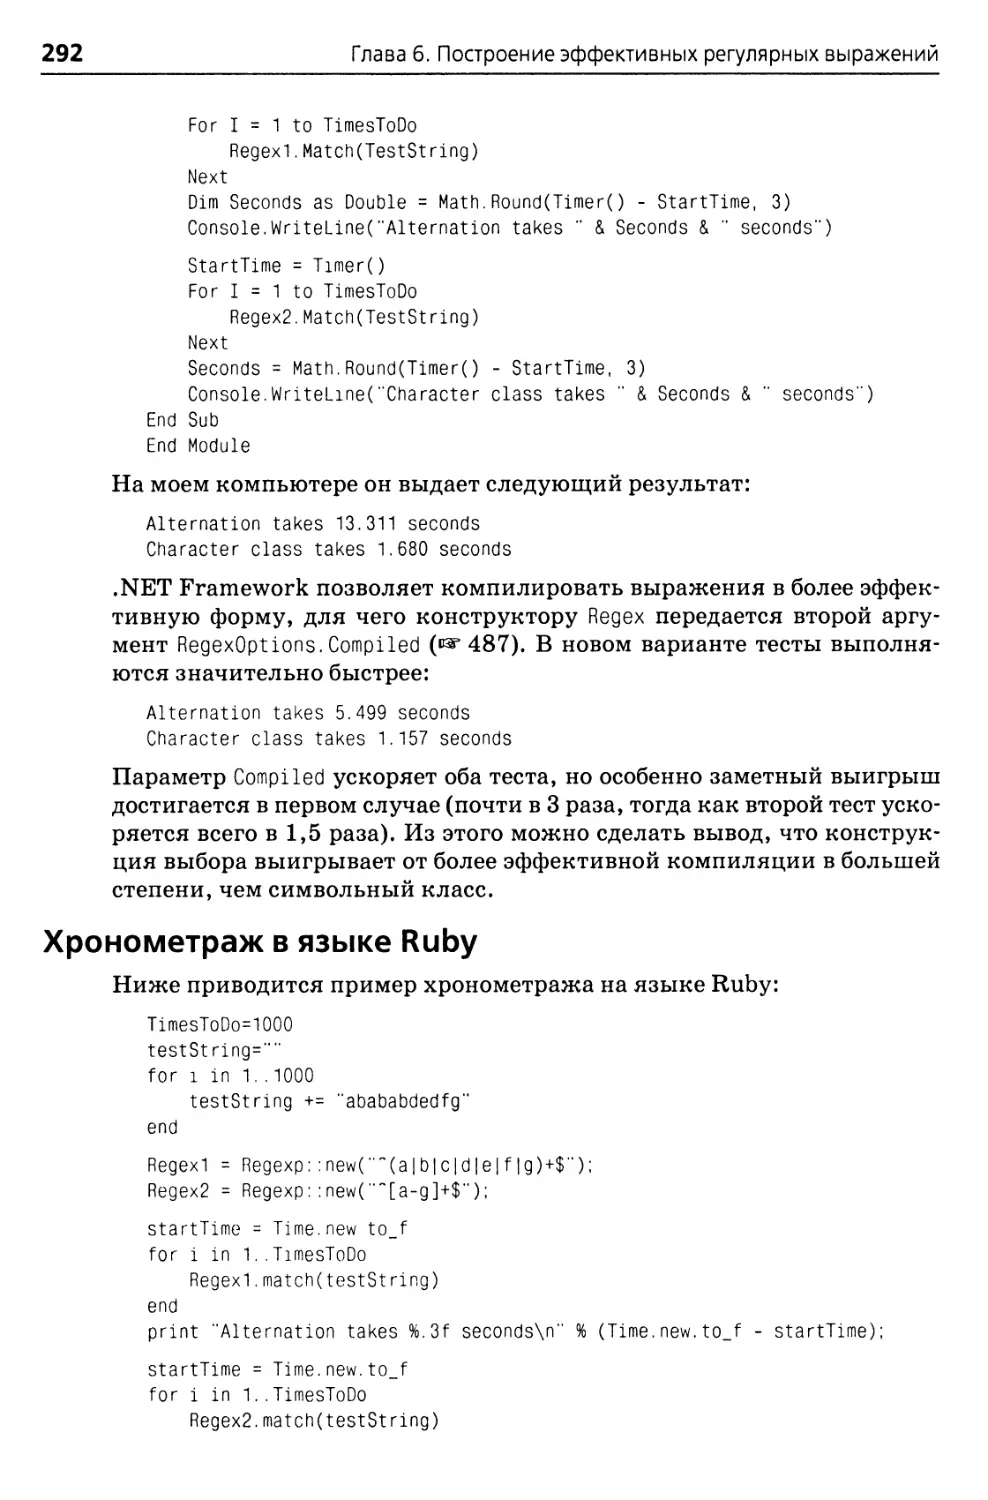 Хронометраж в языке Ruby